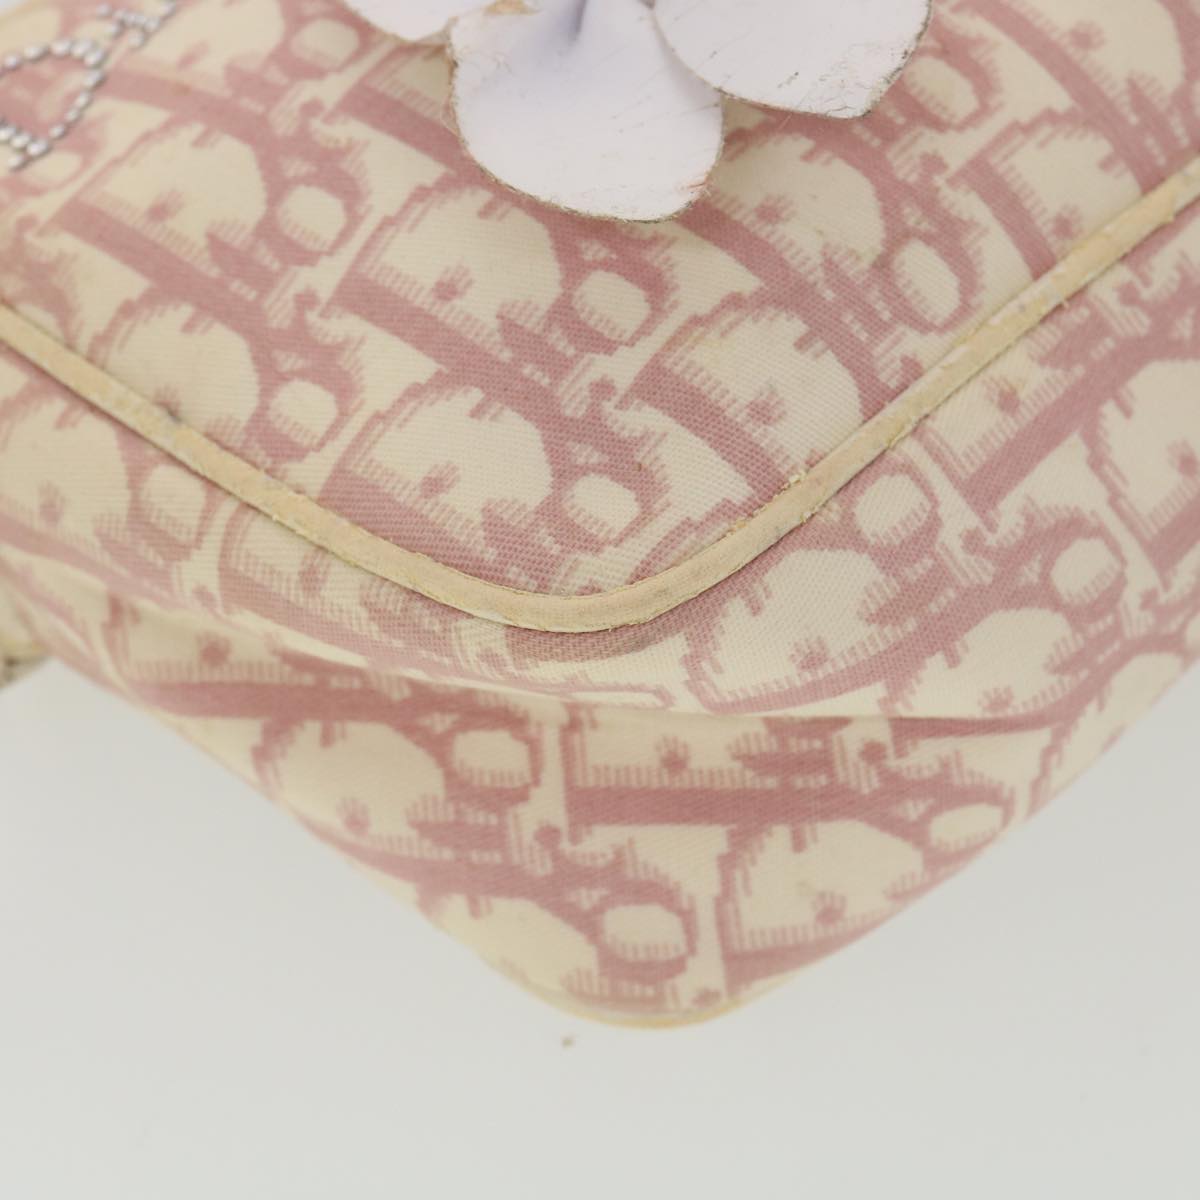 Christian Dior Trotter Canvas Flower Shoulder Bag Pink BO B 1003 Auth 38485